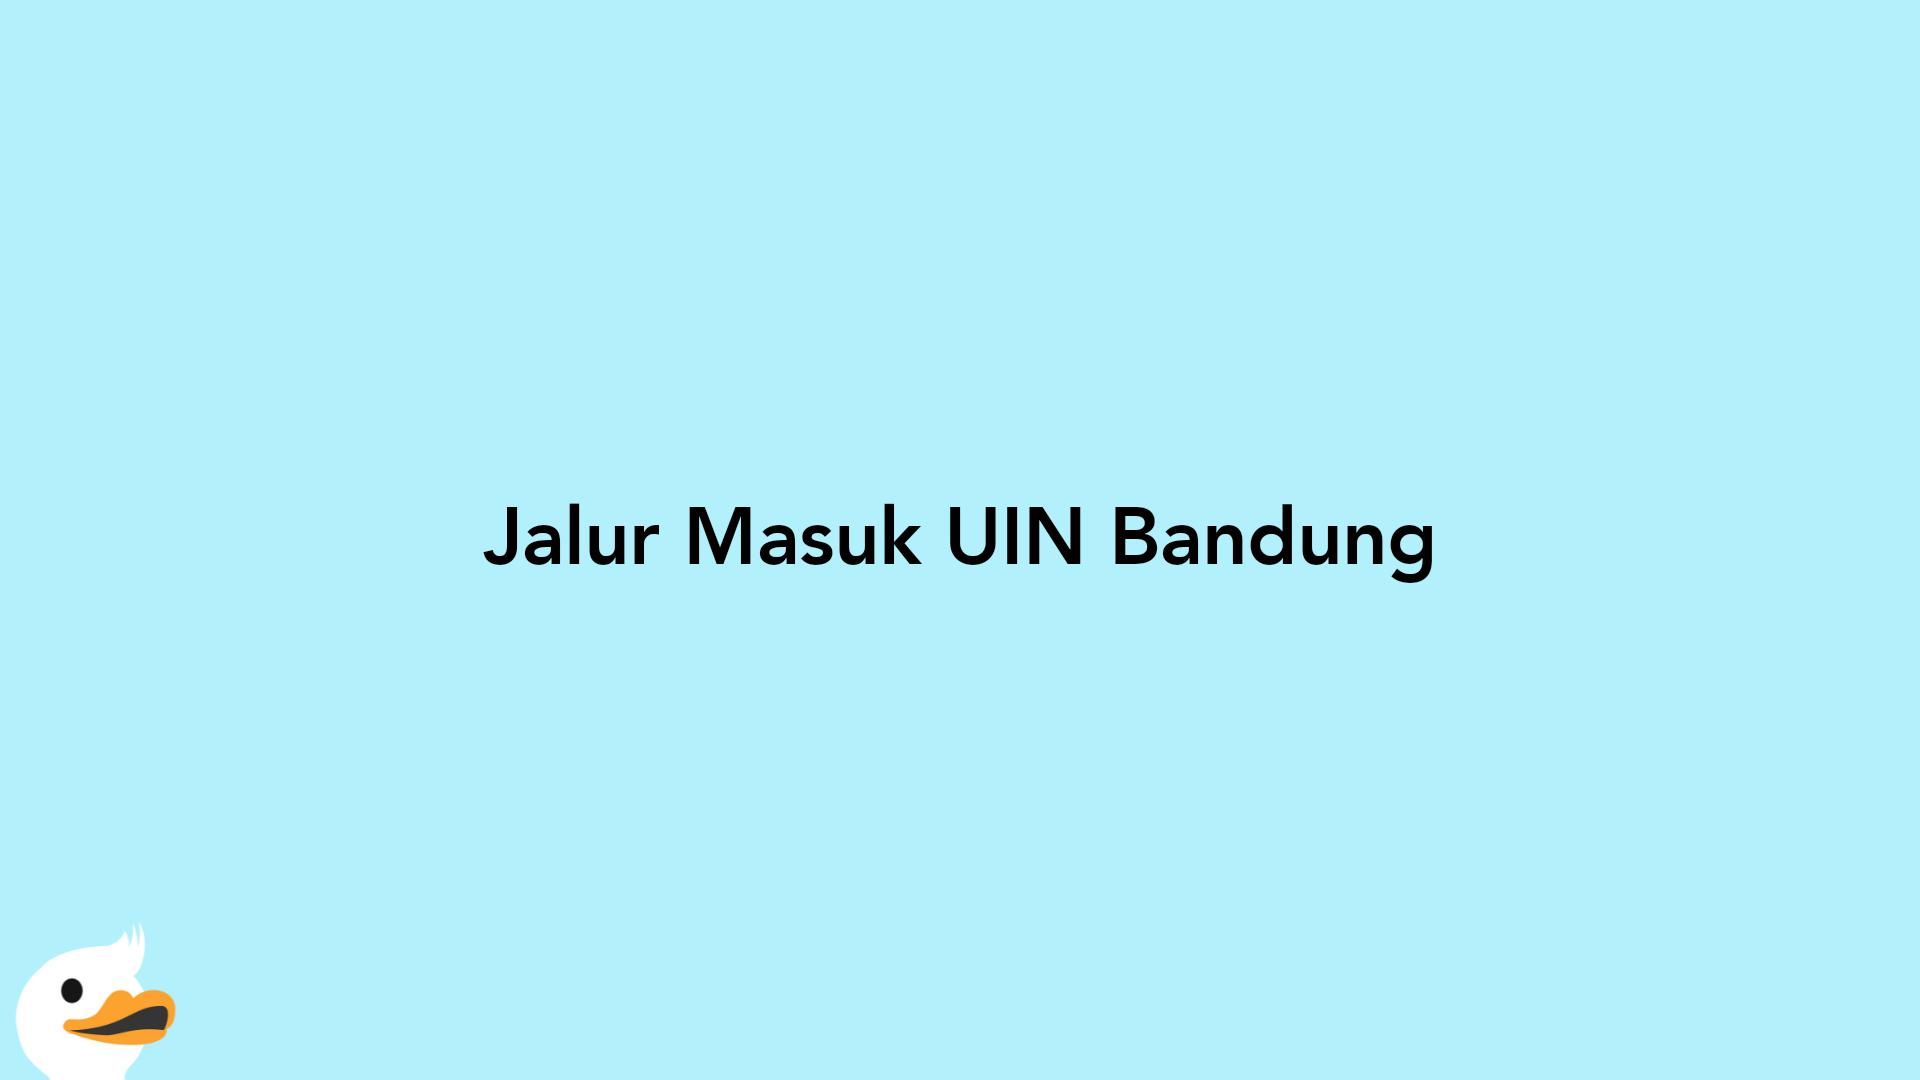 Jalur Masuk UIN Bandung